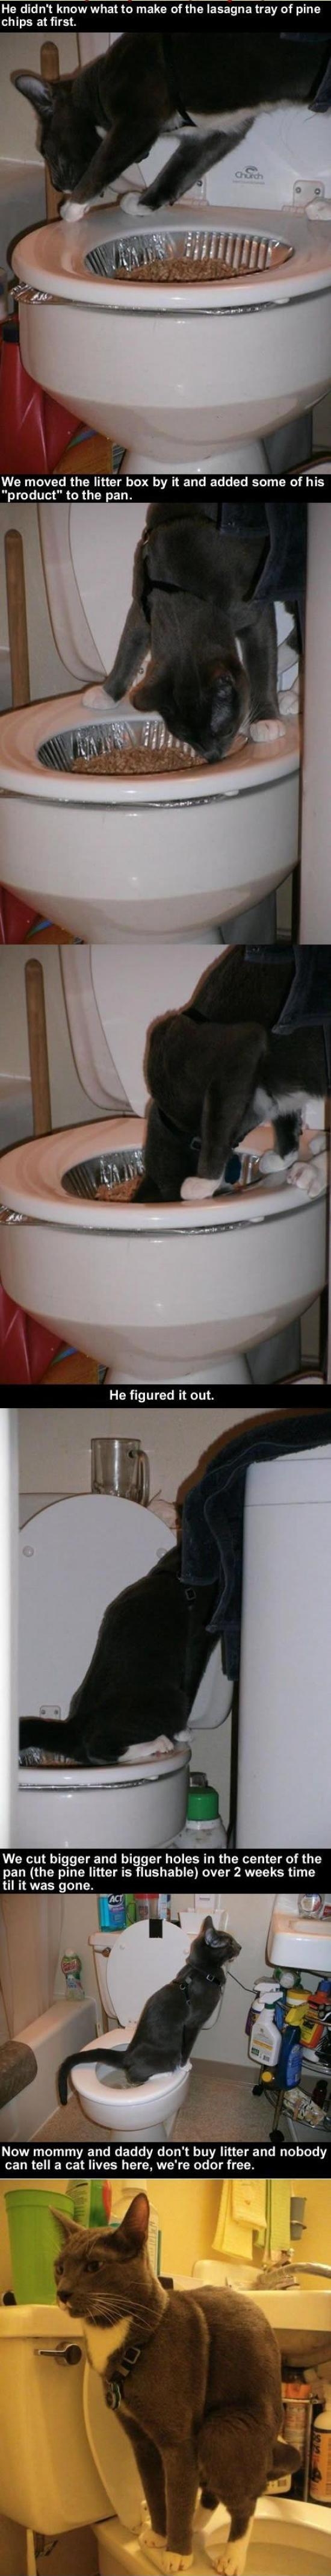 Kitties toilet adventures